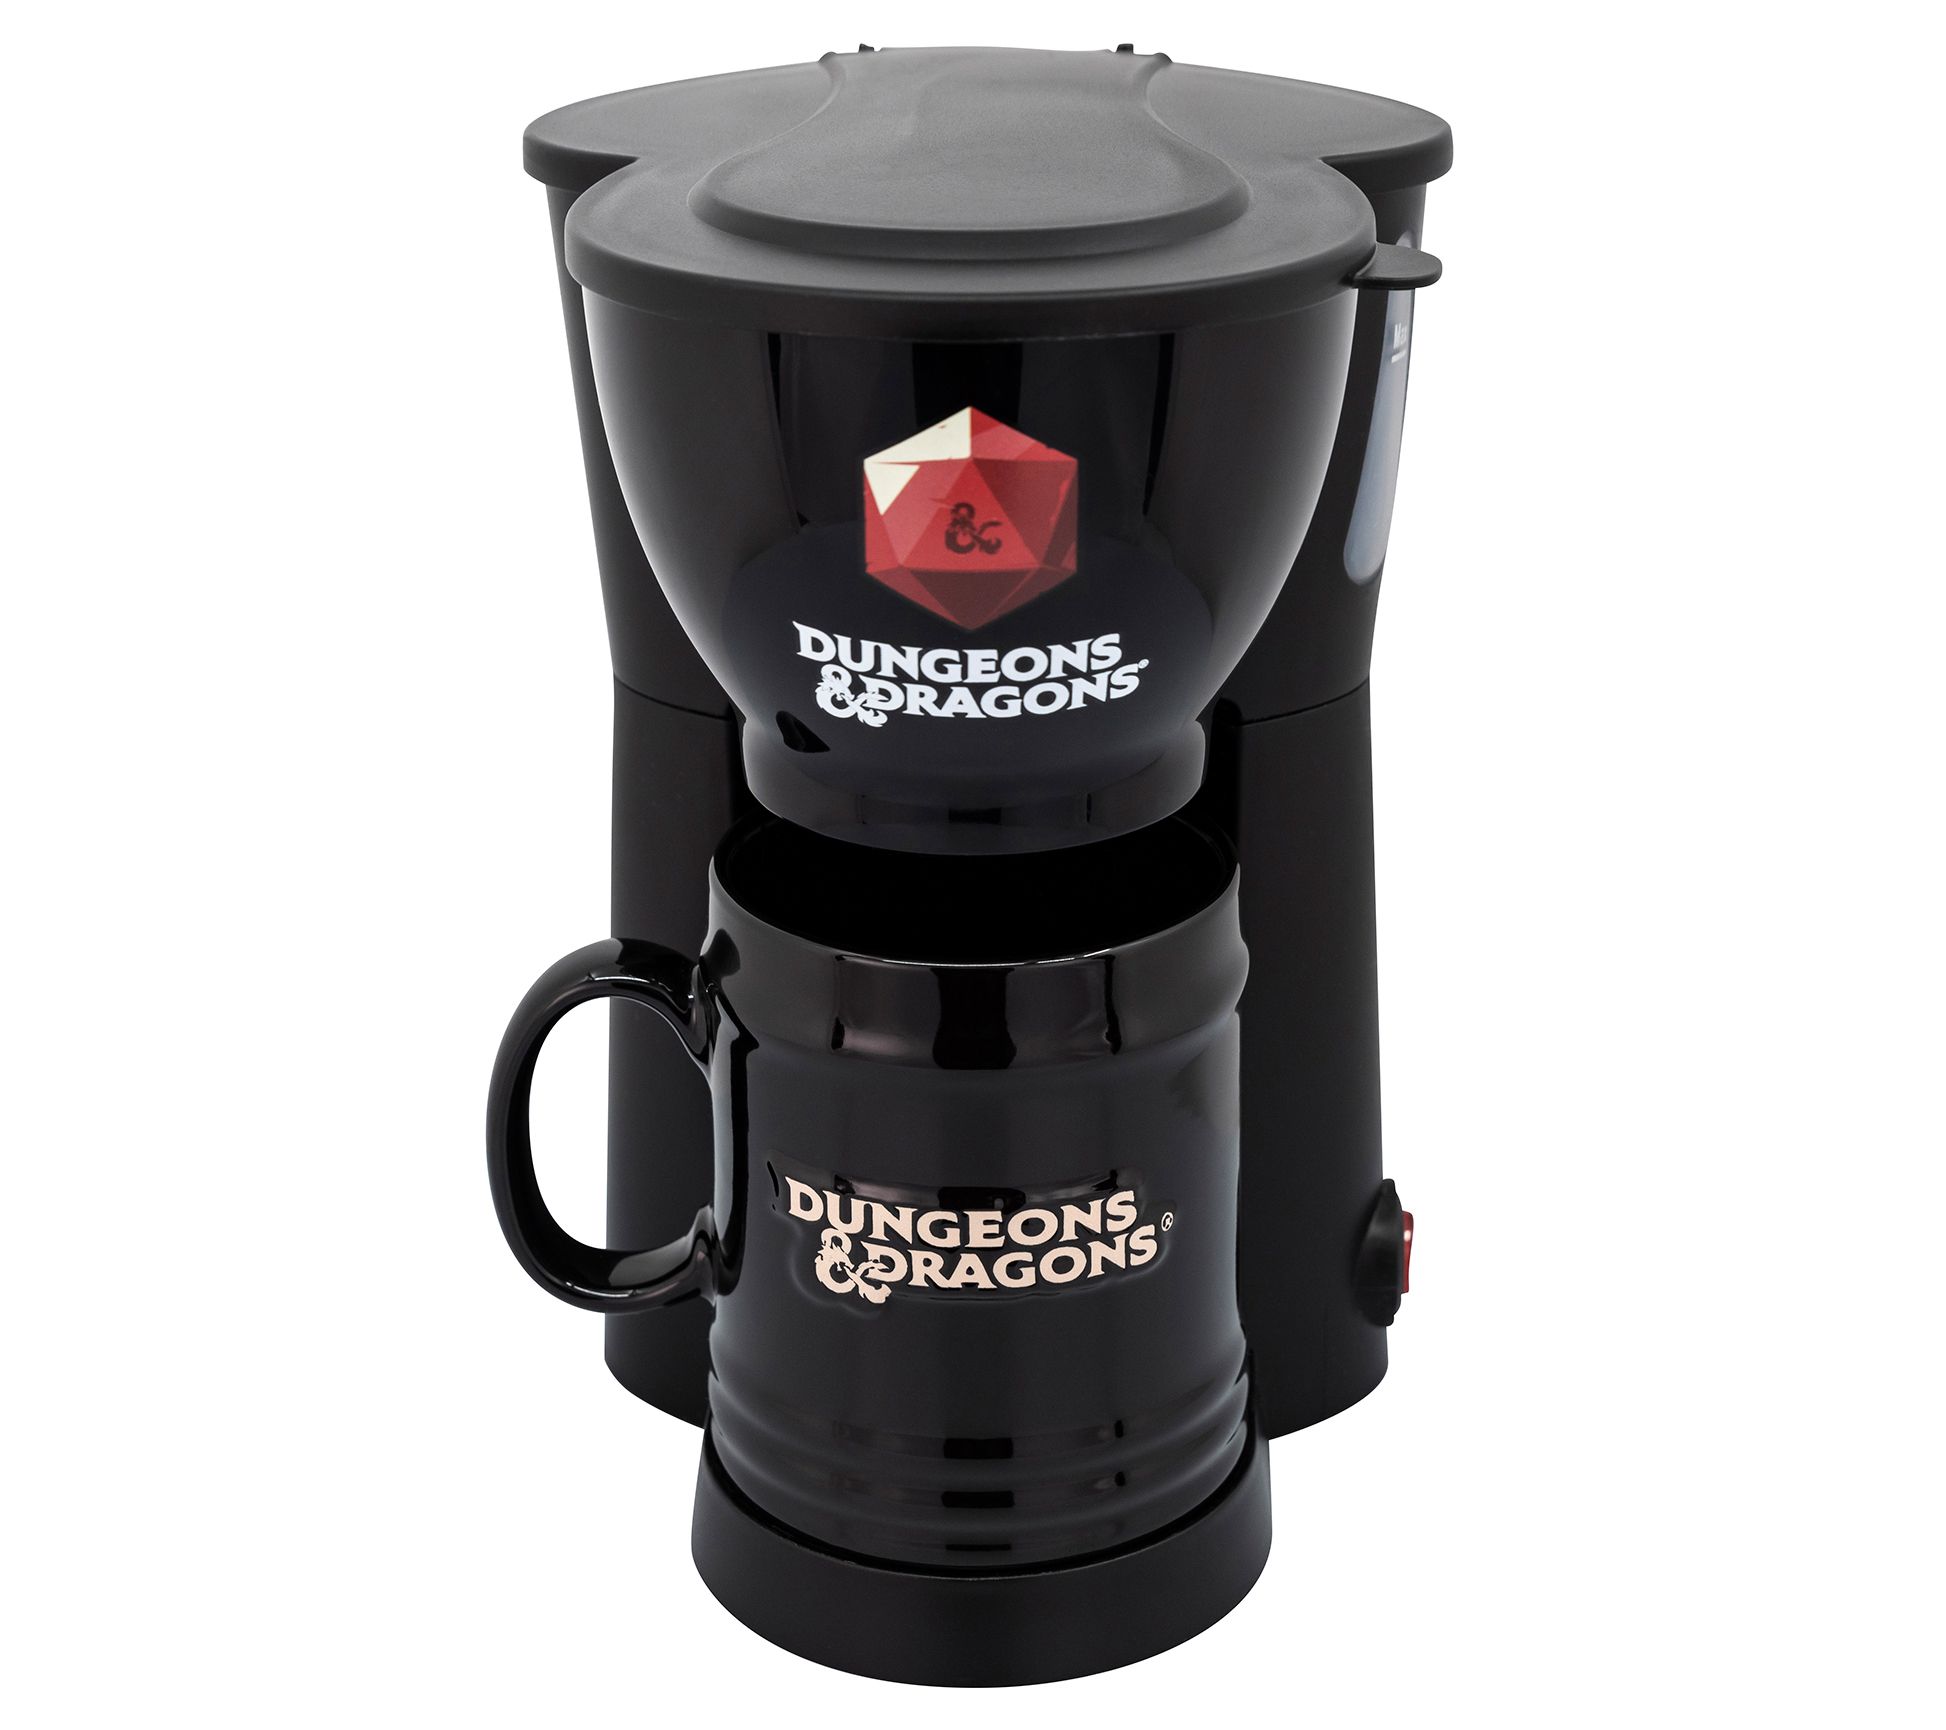 Ninja Coffee Machines vs Keurig Coffee Machines - Brand Wars 